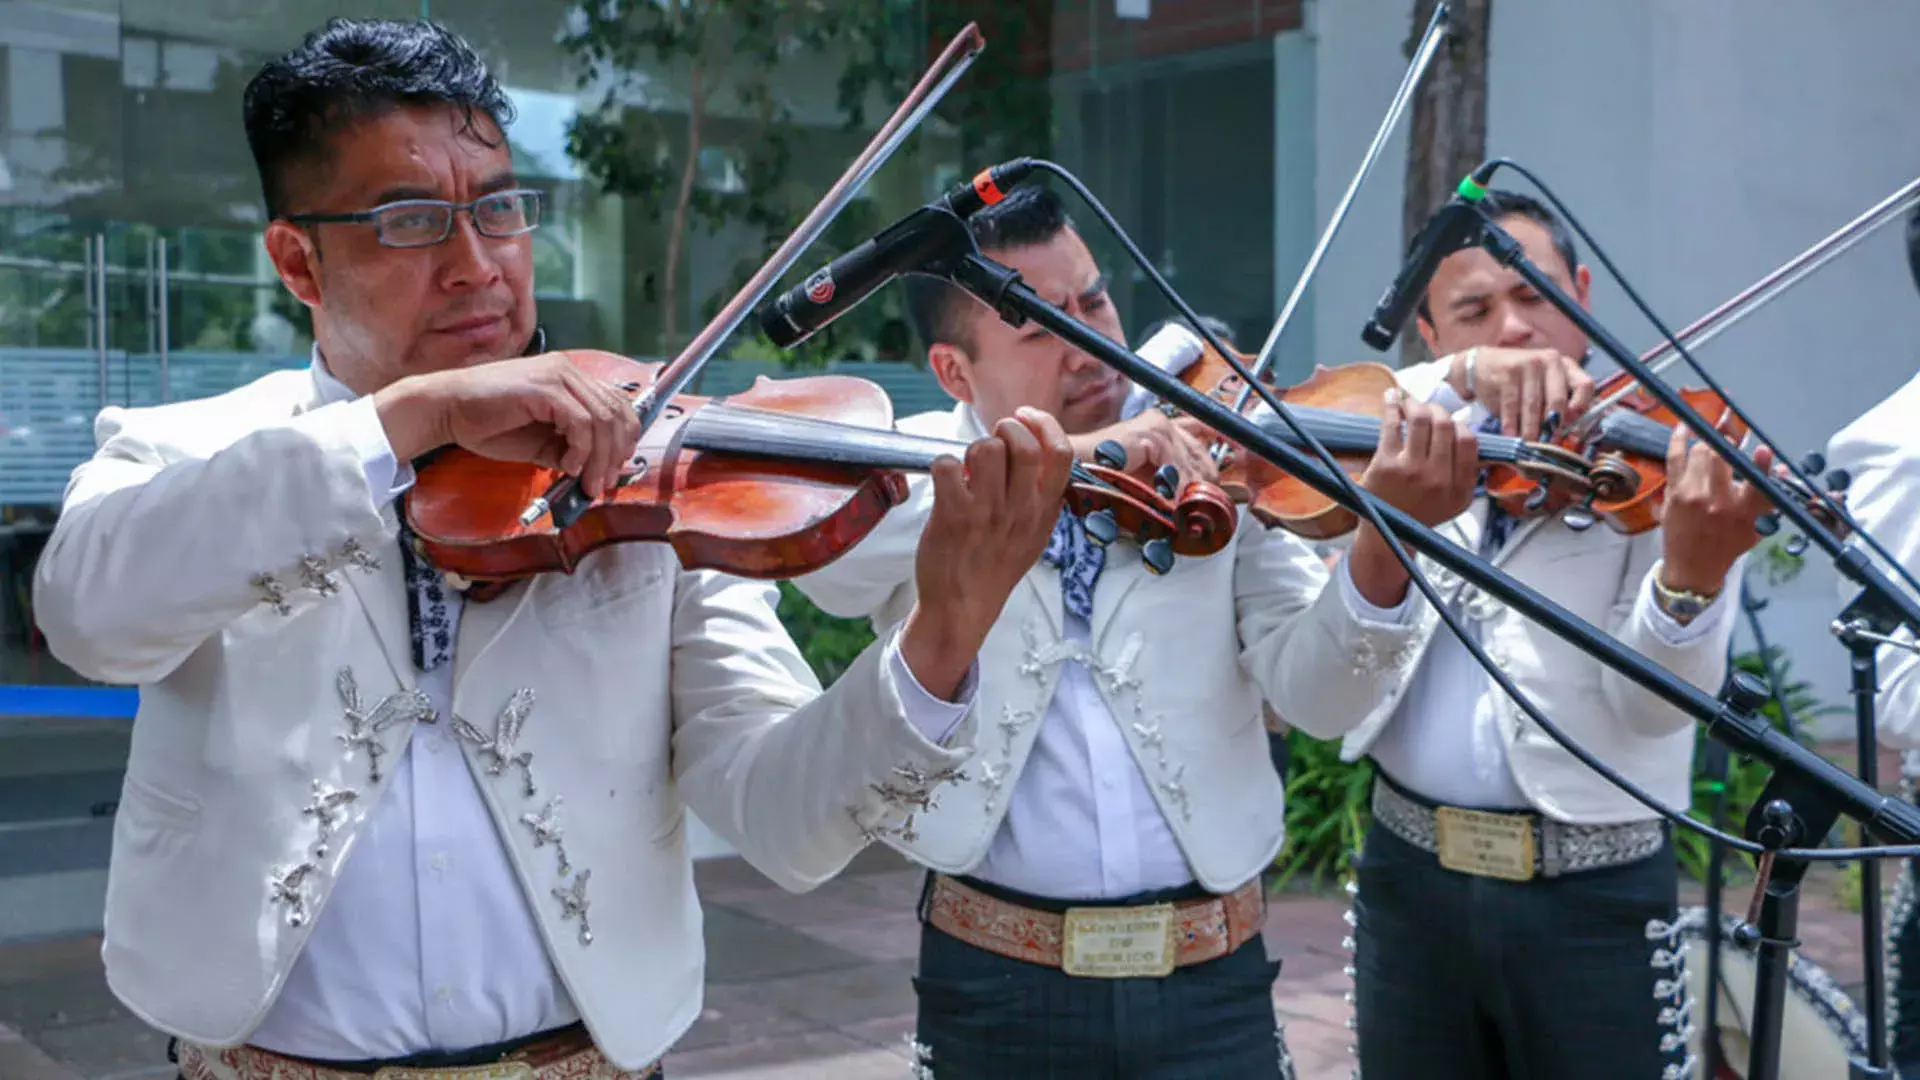 Festejos del 75 Aniversario del Tec de Monterrey en campus Toluca